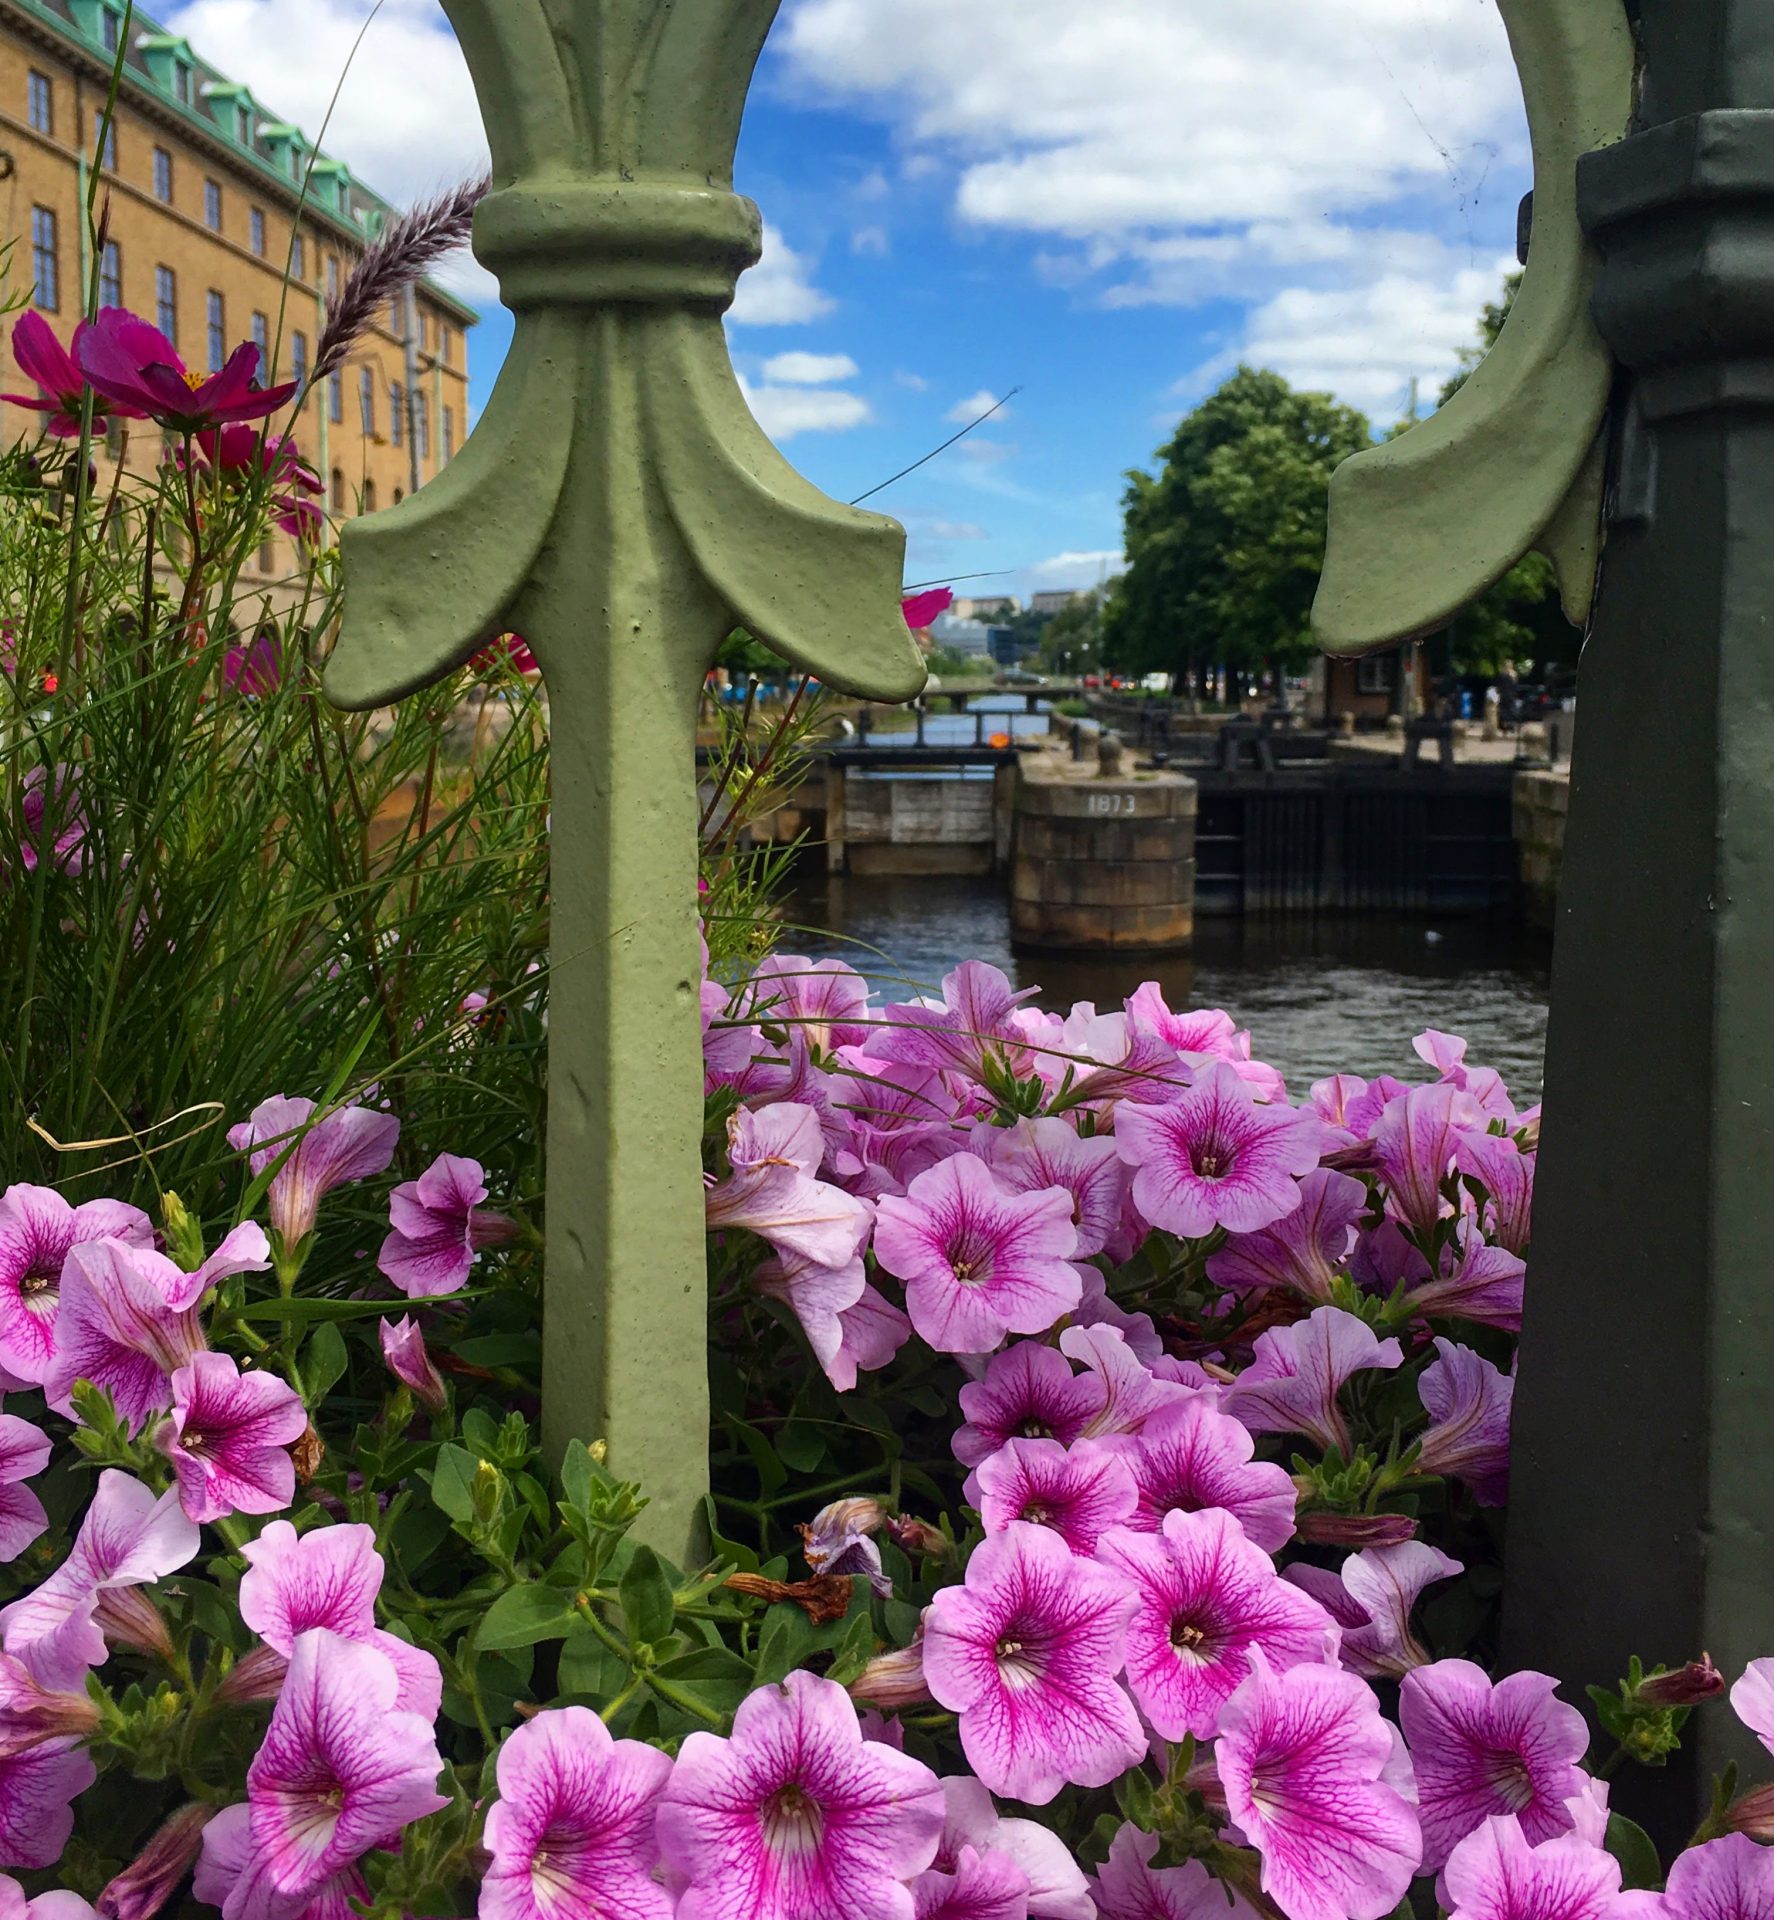 gothenburg canals flowers - Slottsskogen & the Gothenburg City Center